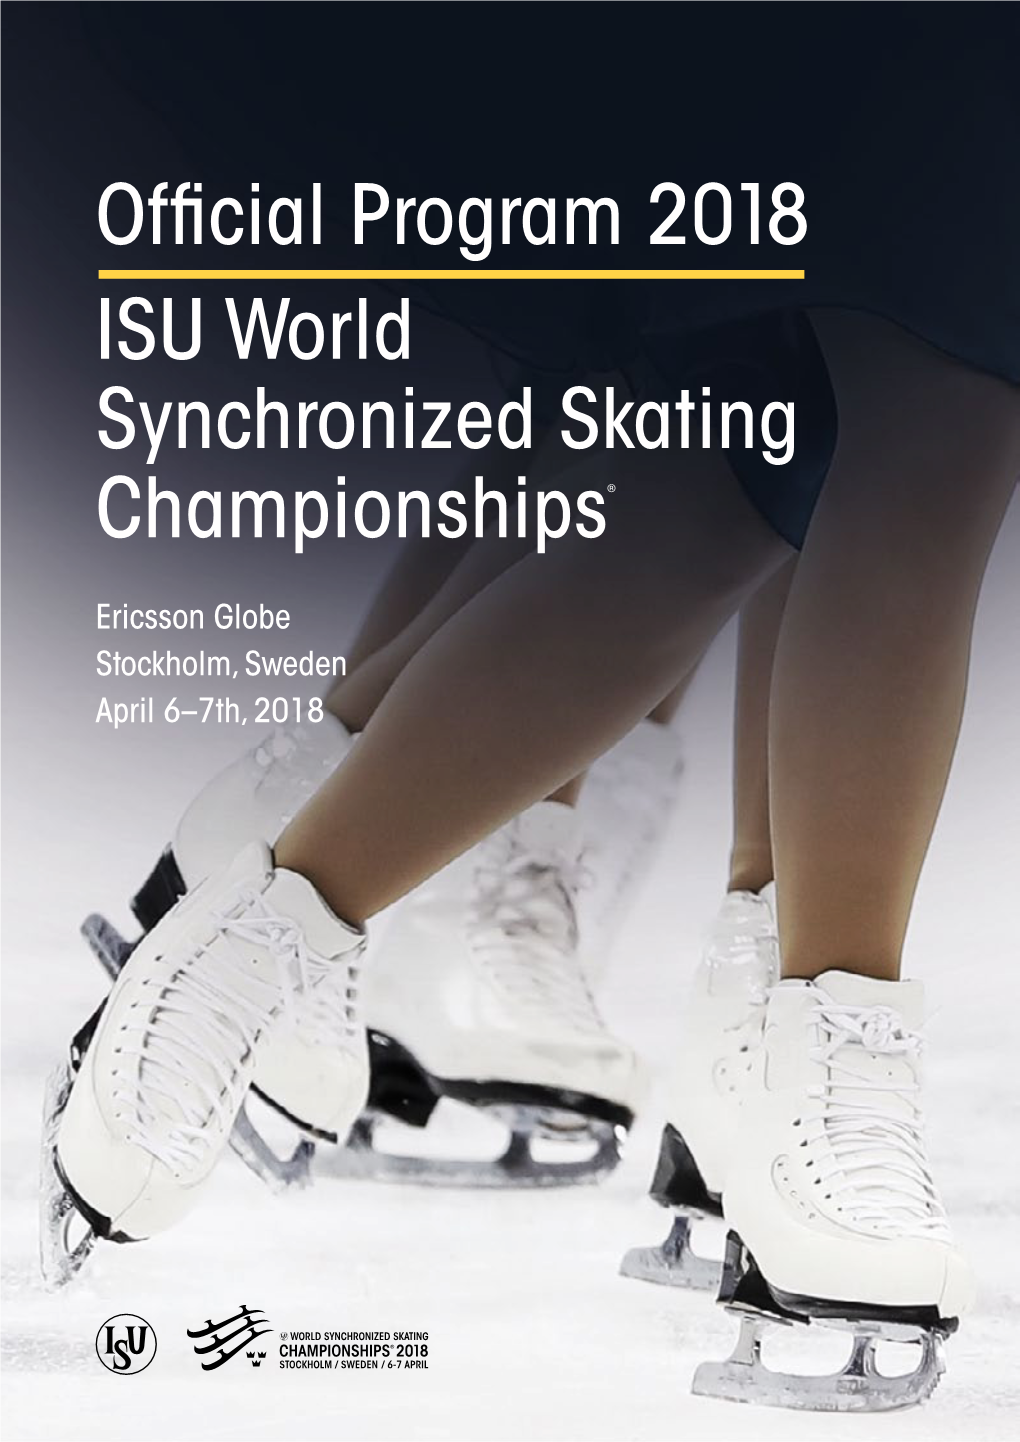 Official Program 20 1 8 ISU World Synchronized Skating